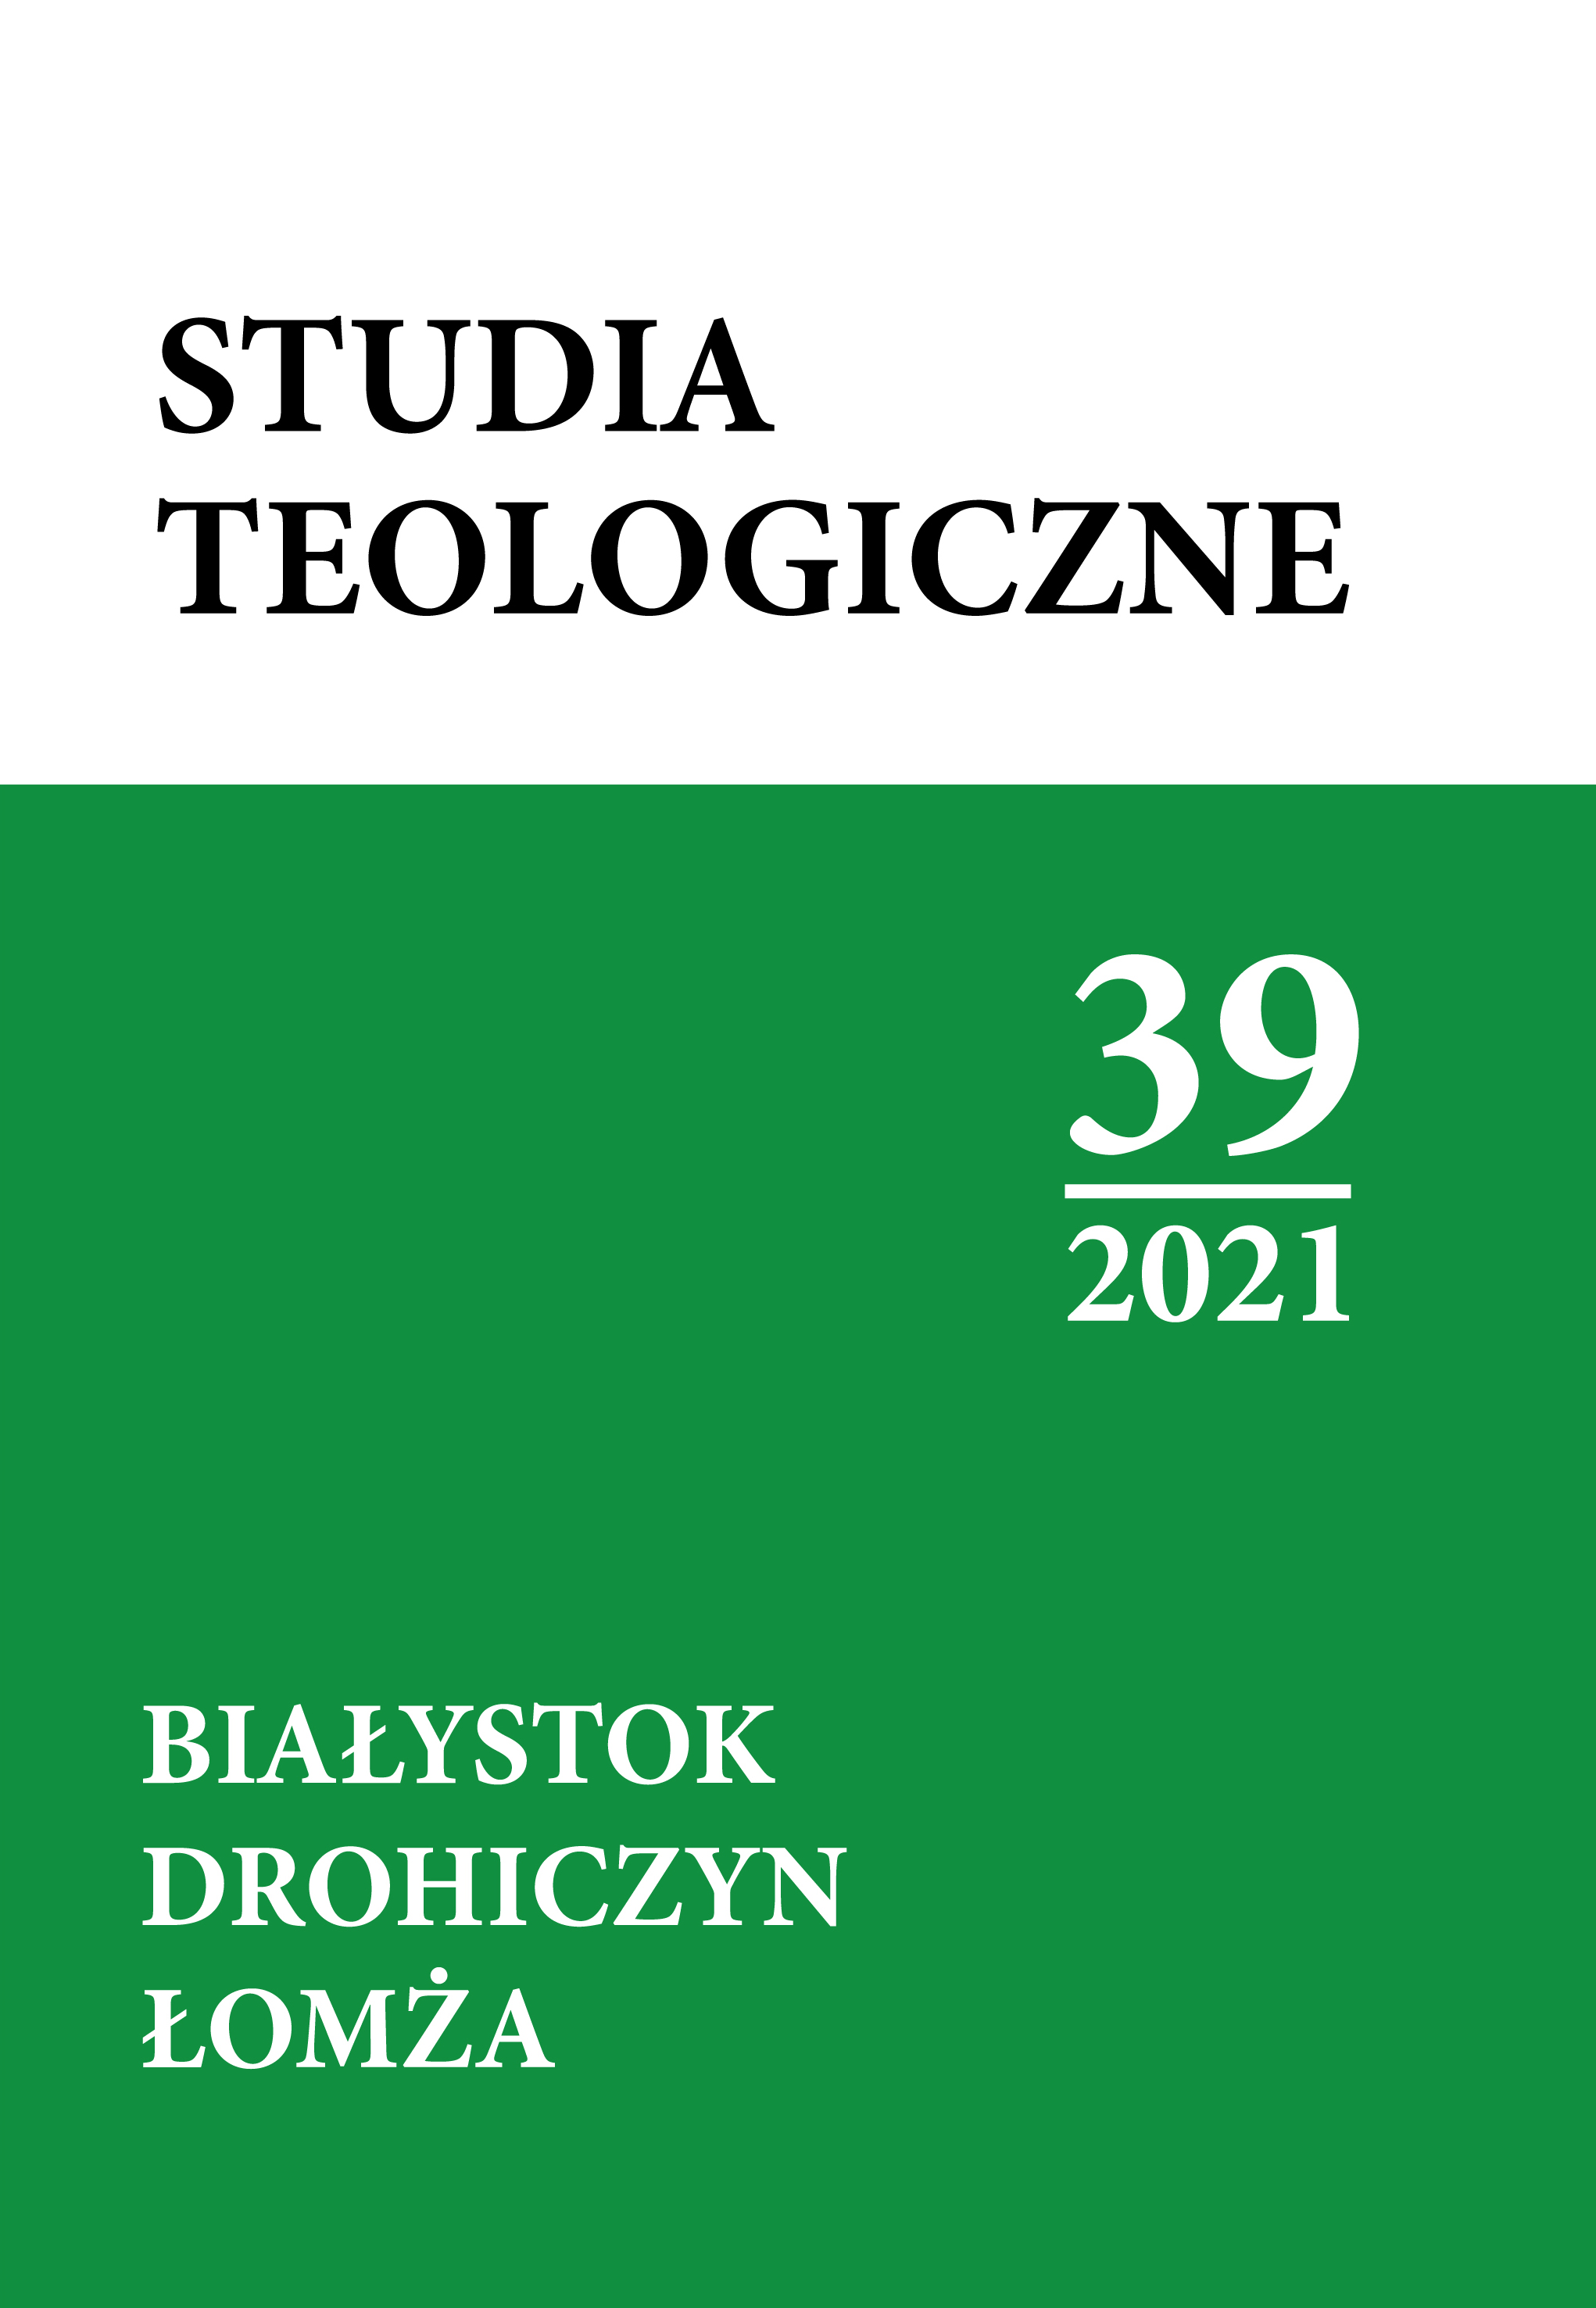 Studia Teologiczne Białystok Drohiczyn Łomża 39/2021